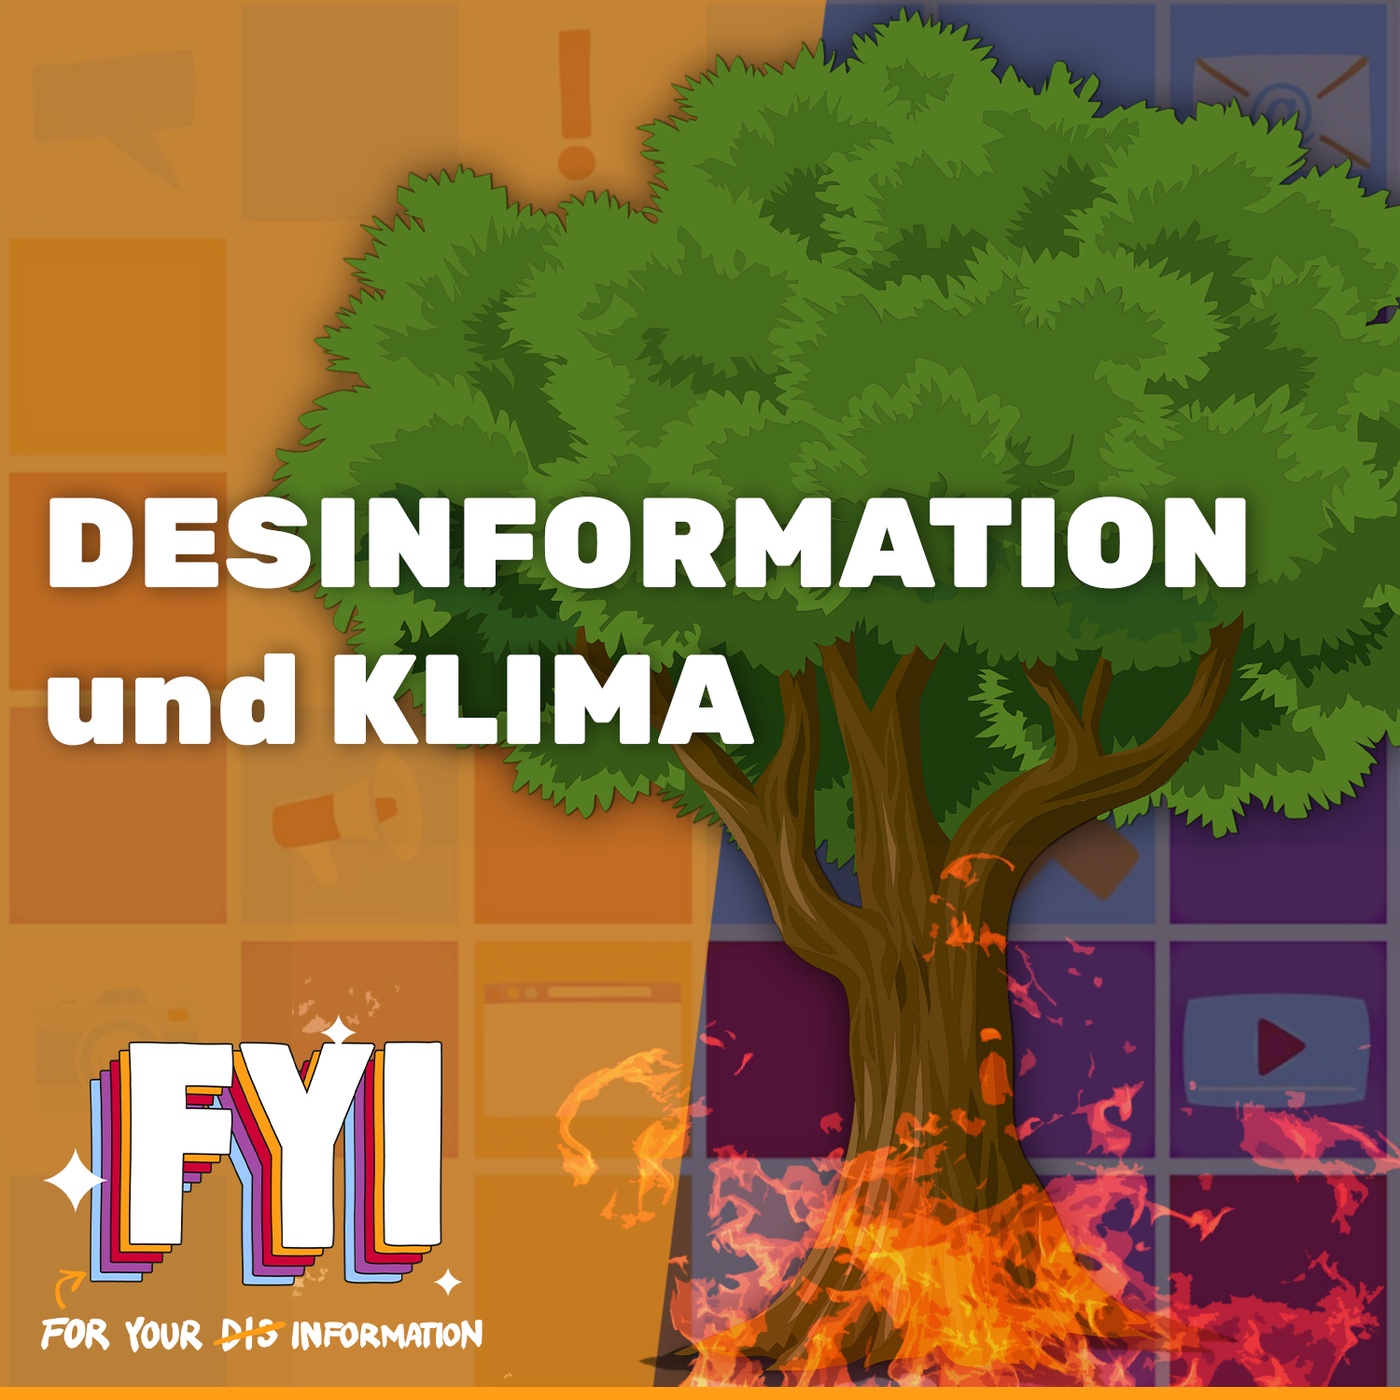 Desinformation und Klimakrise | FYI #01 mit Bastian Schlange, Andreas Lingsch & Leo Barina